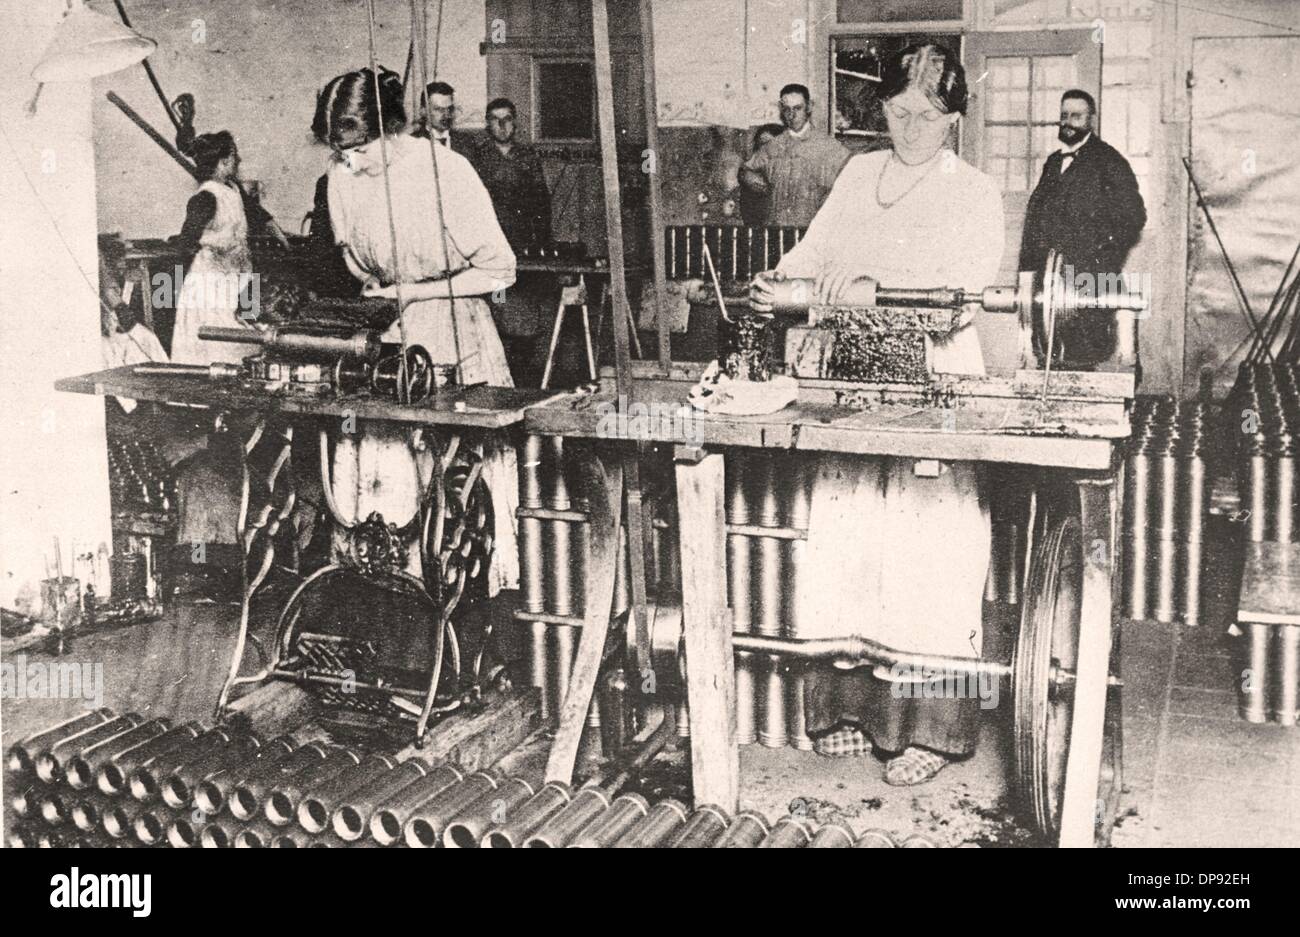 Las mujeres muelen y lacen granadas en una fábrica alemana de armas y municiones en 1915, lugar desconocido. Archivo fotográfico für Zeitgeschichte Foto de stock